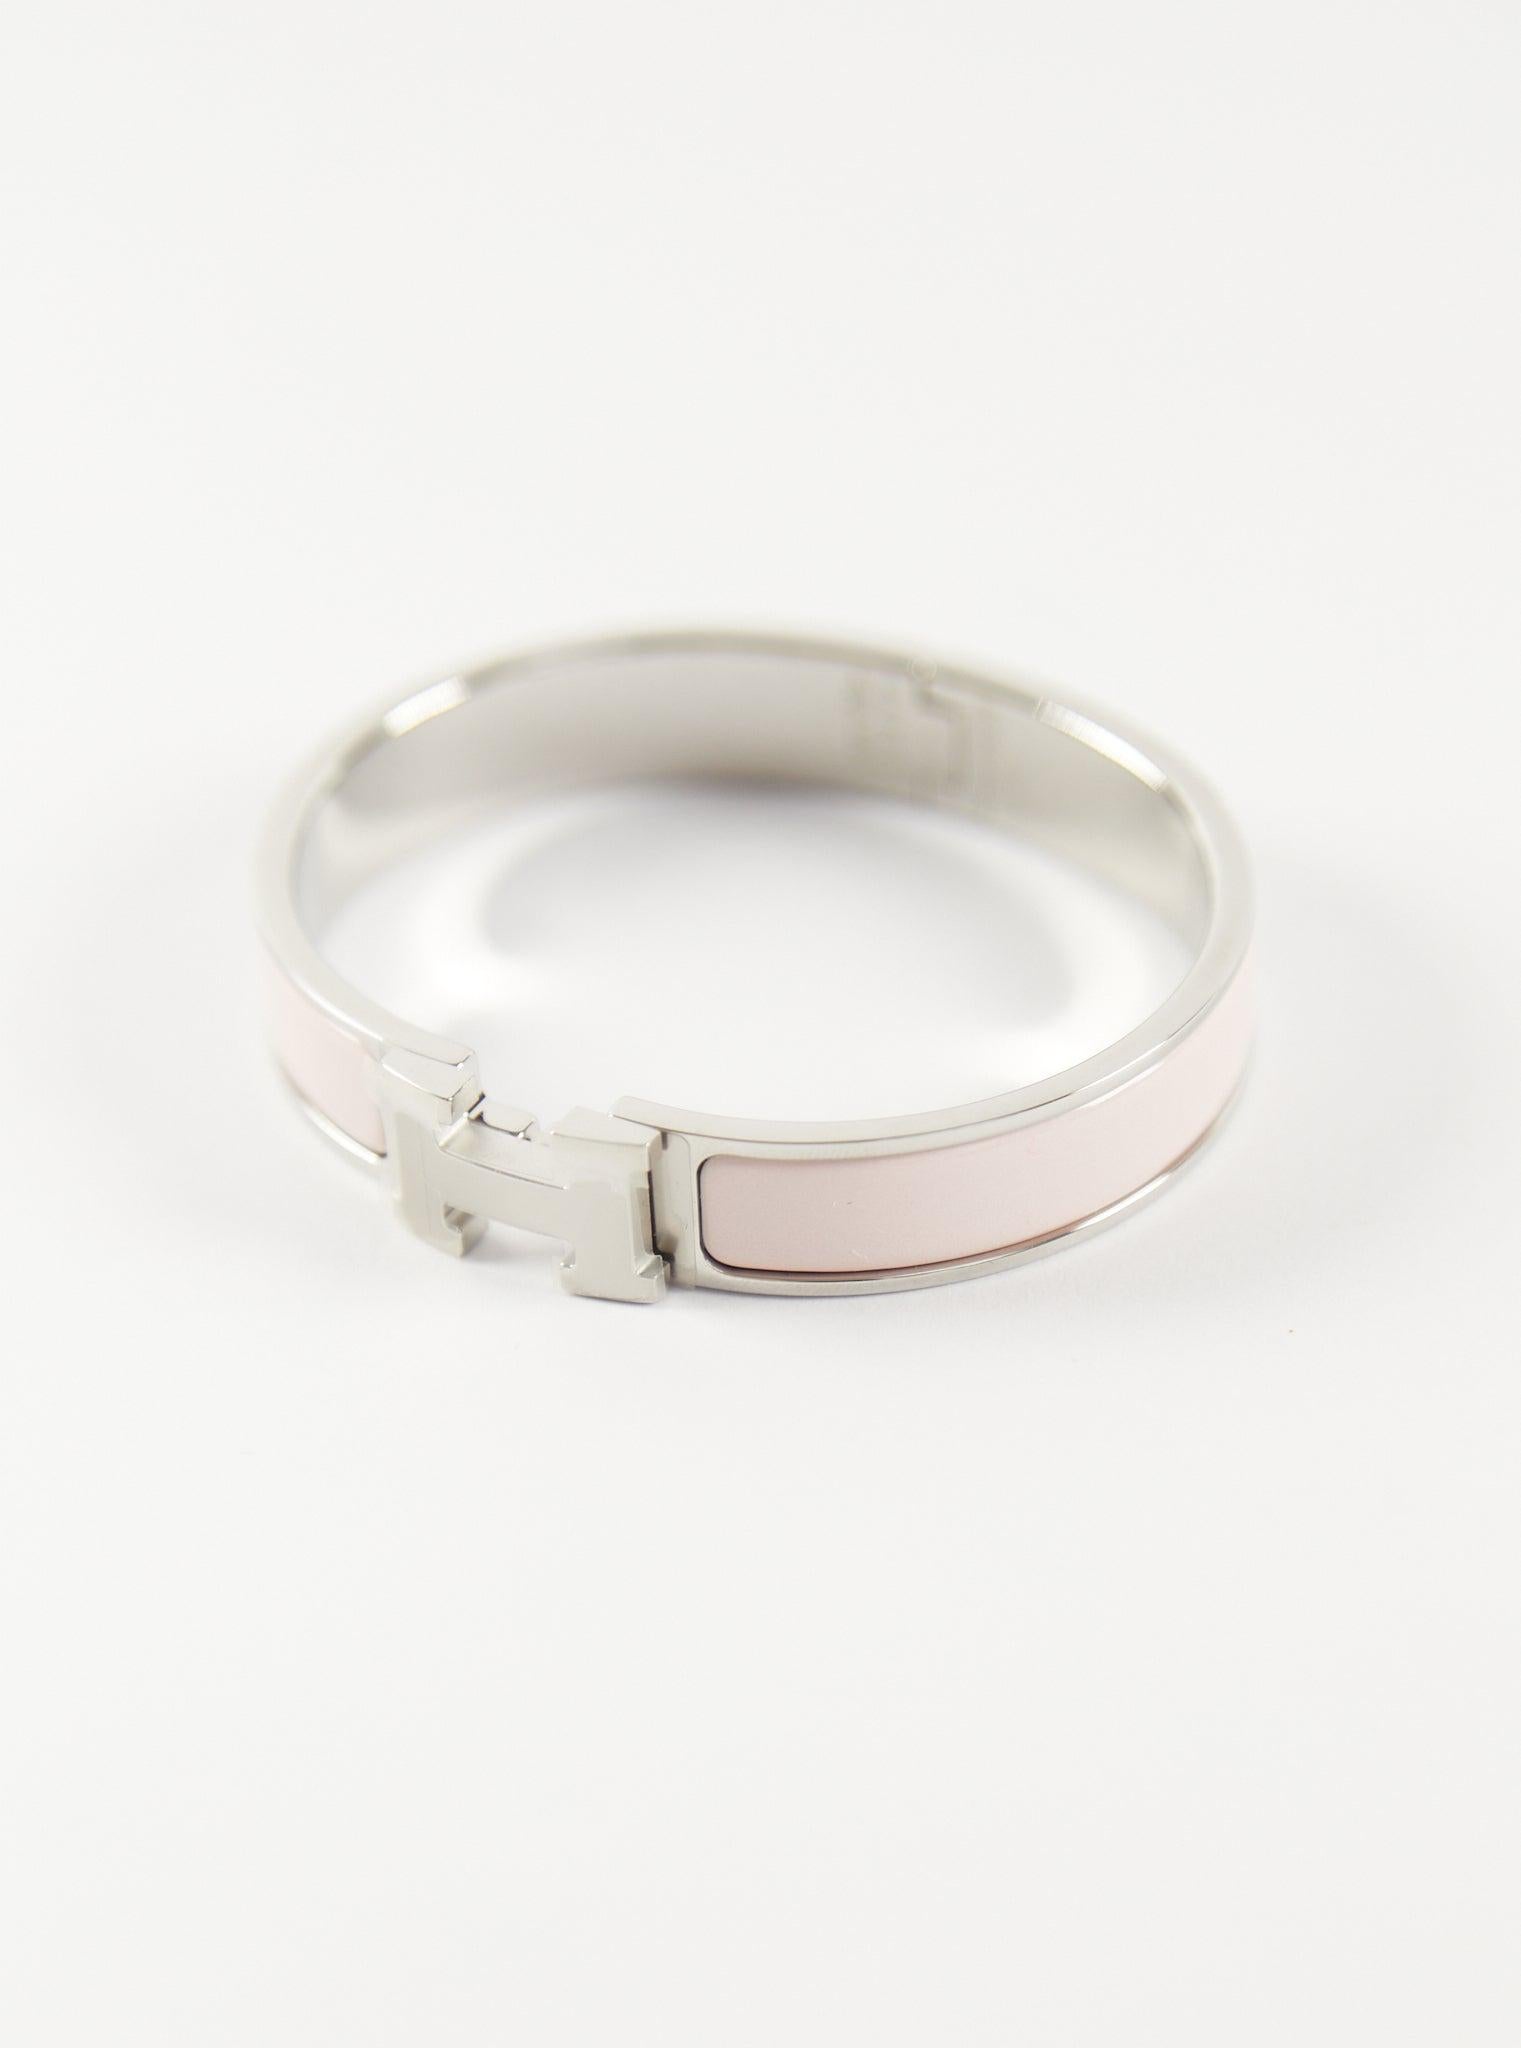 Hermès  Bracelet Clic H GM en rose candeur et palladium

Taille du poignet : 16.8 cm  Largeur : 8 mm

Fabriqué en France